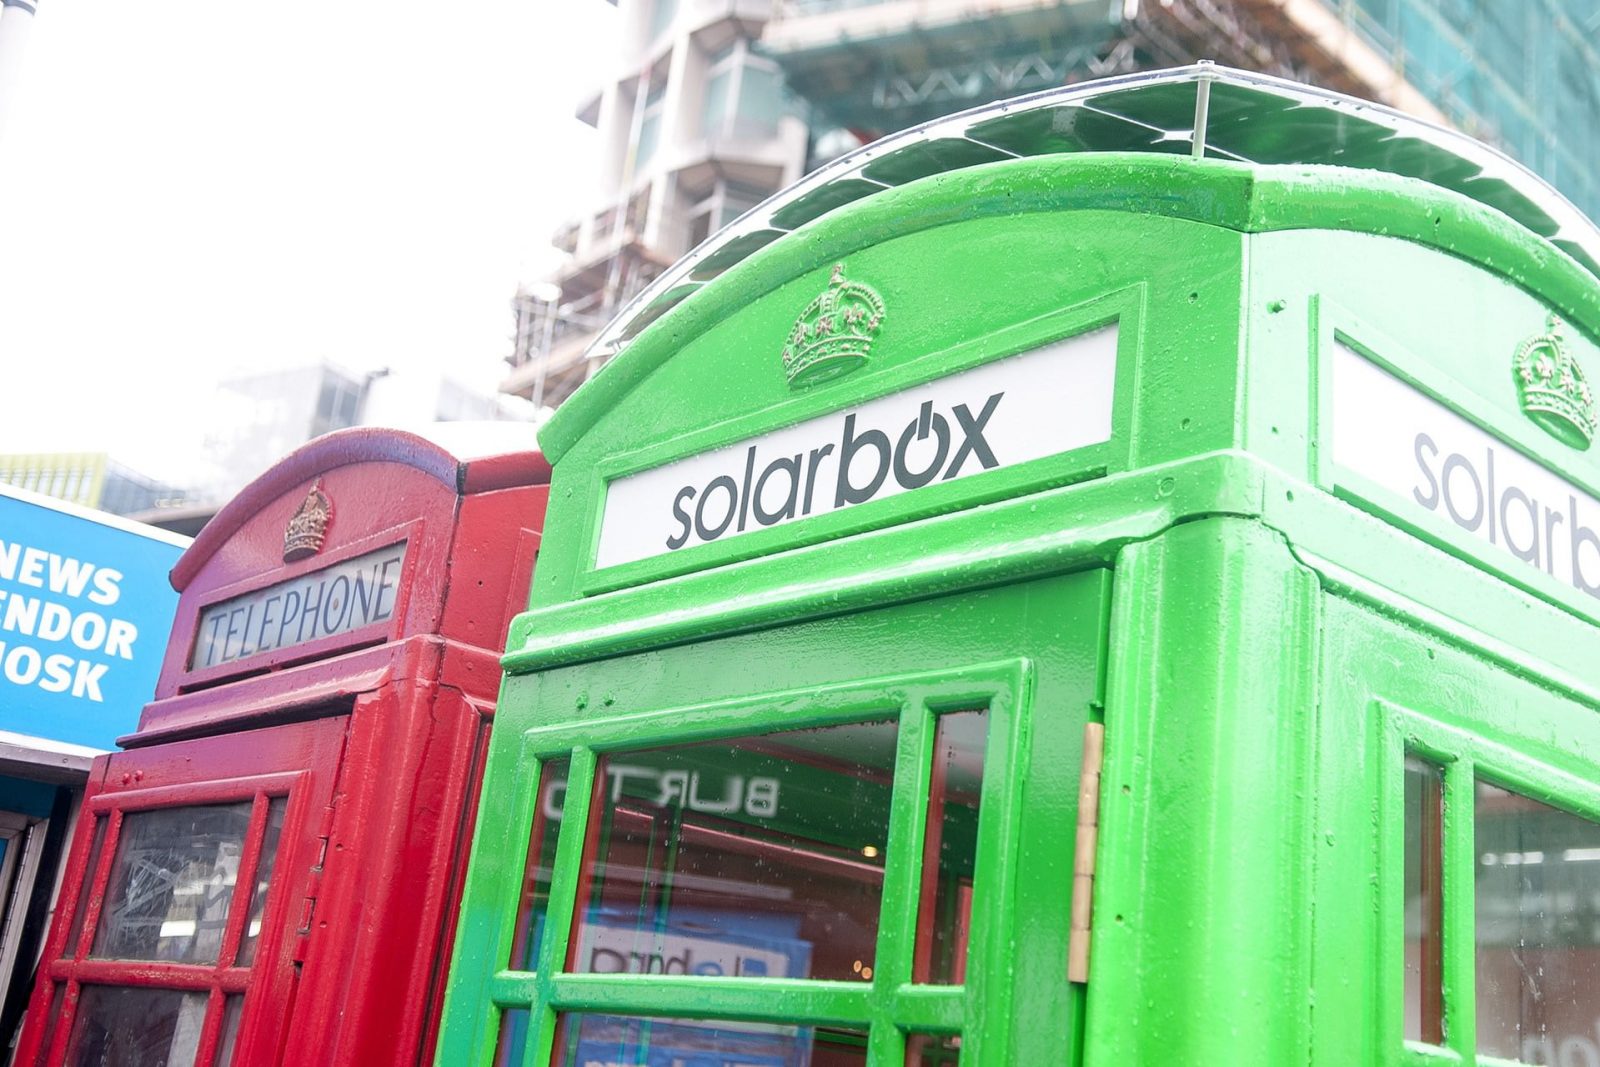 Le cabine telefoniche di Londra diventano stazioni di ricarica per smartphone 1